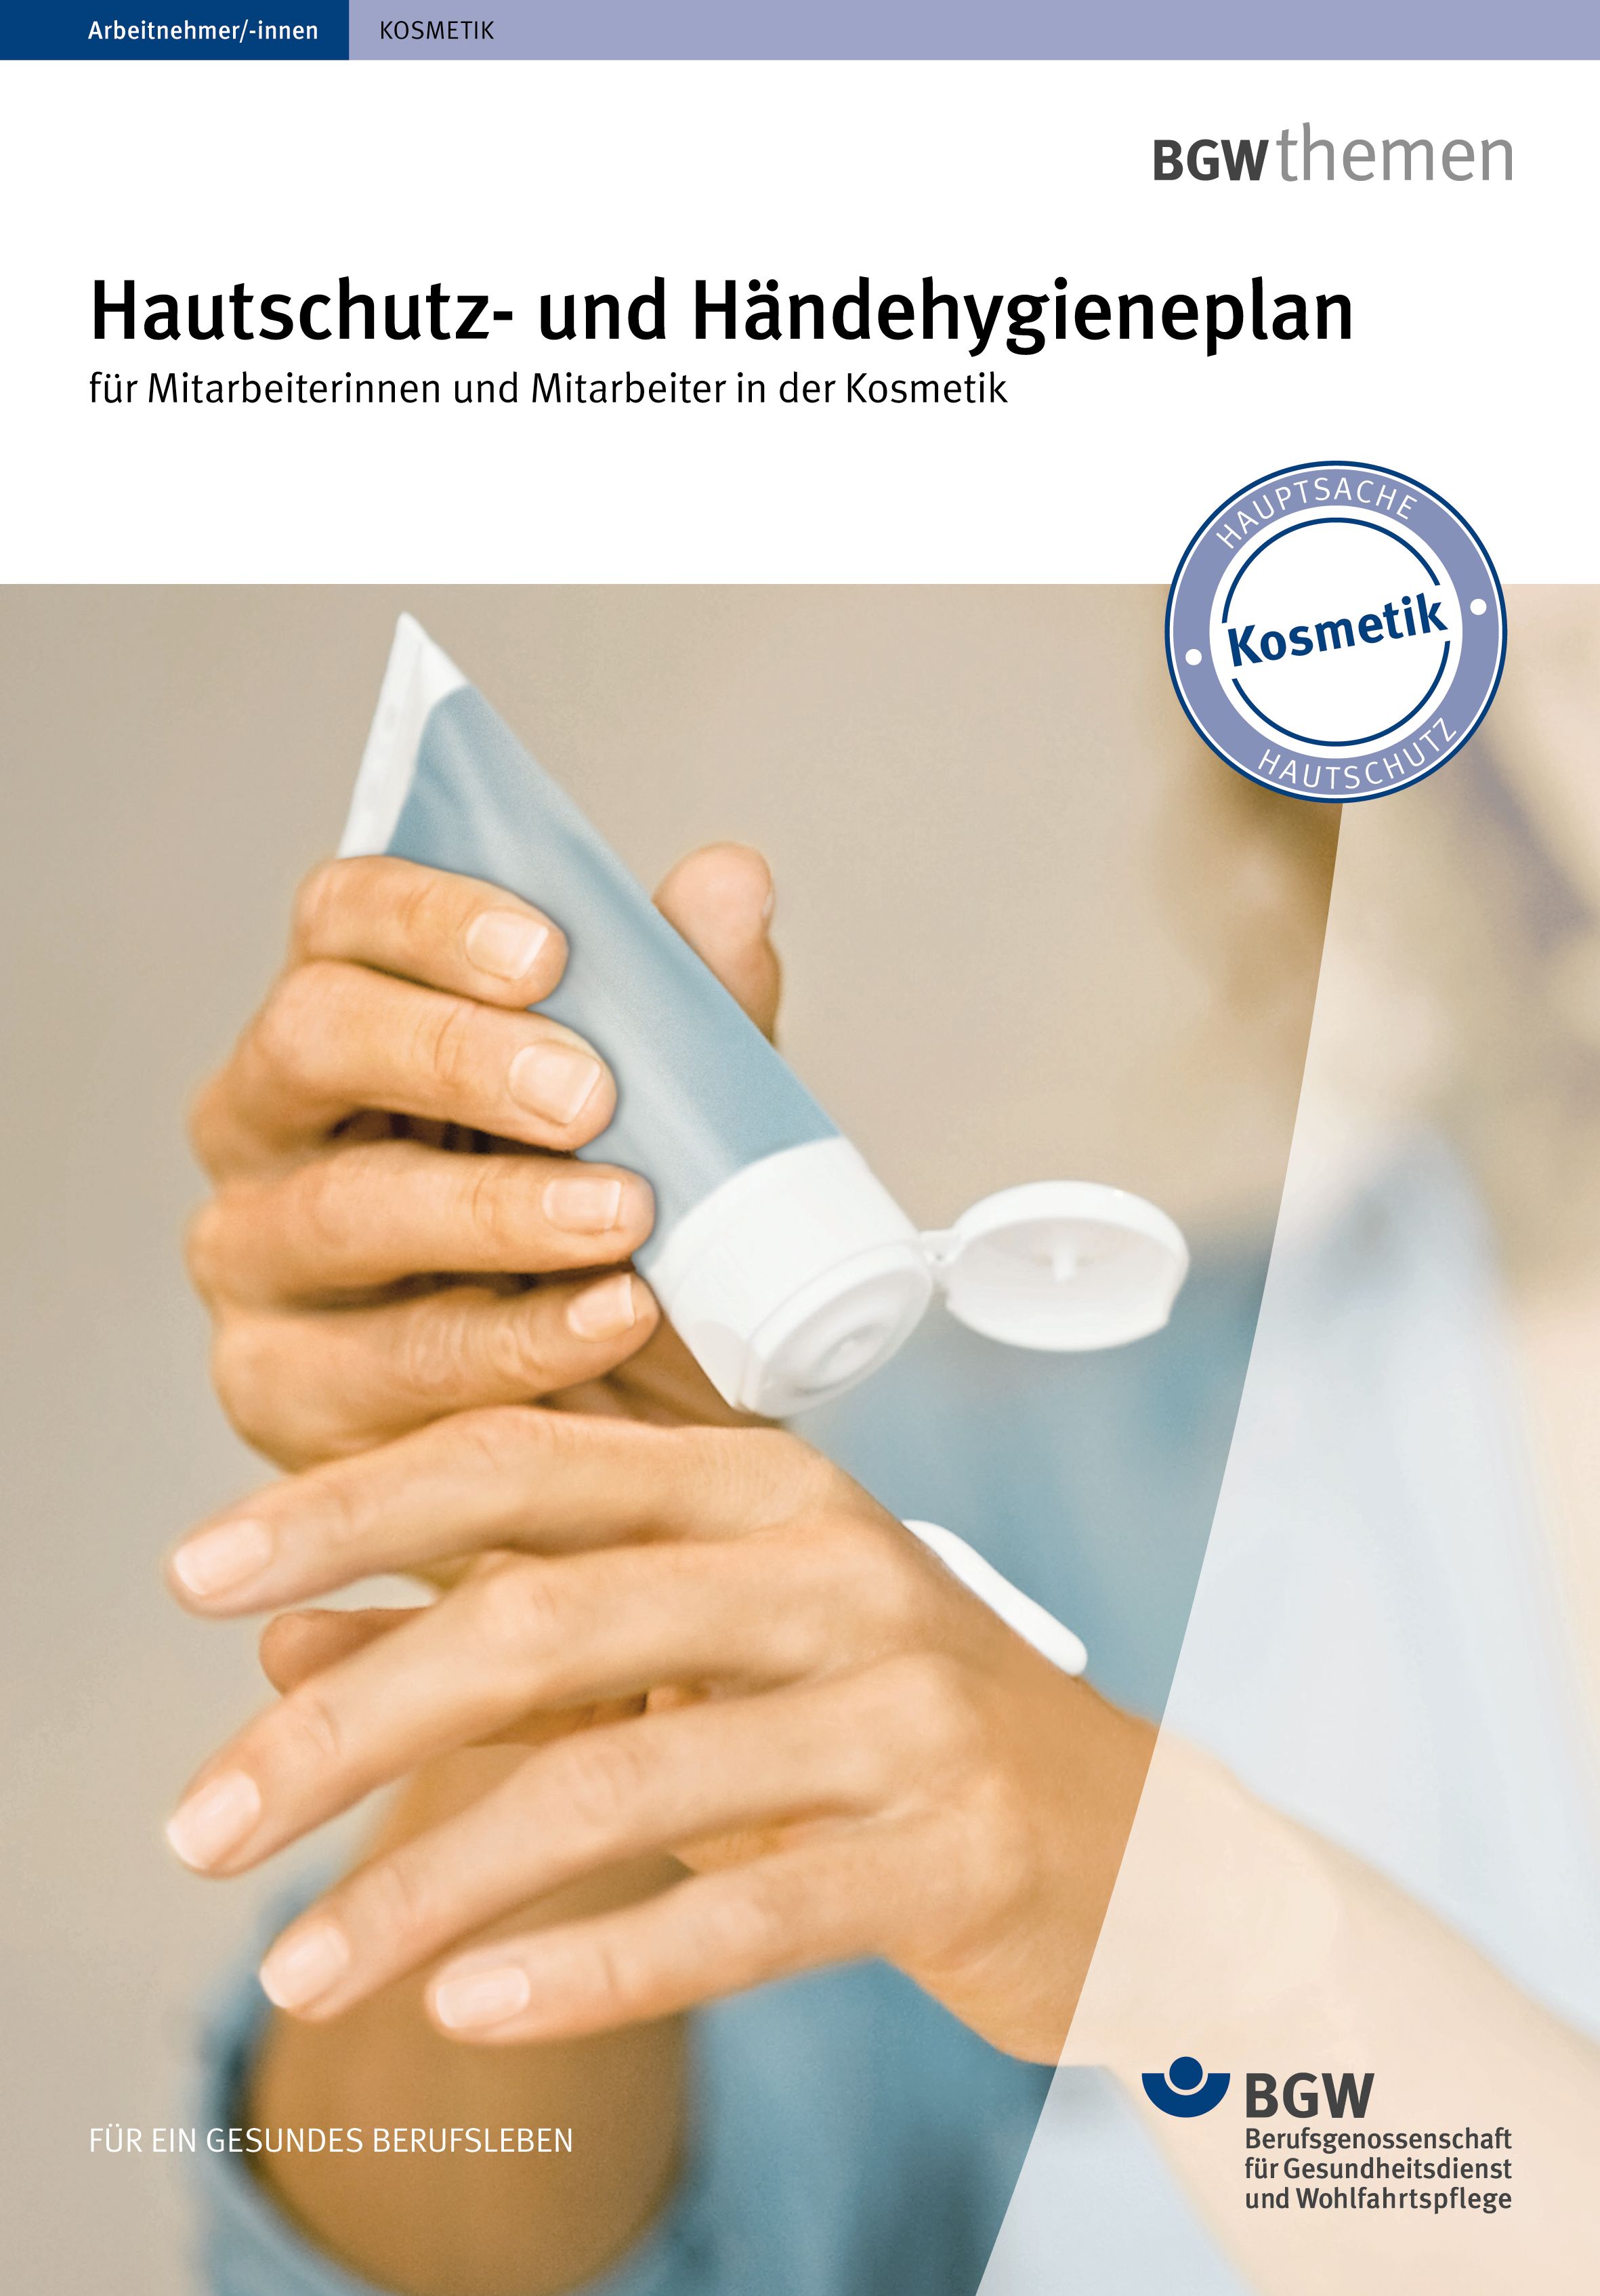 Abbildung: Hautschutz- und Händehygieneplan für die Kosmetik